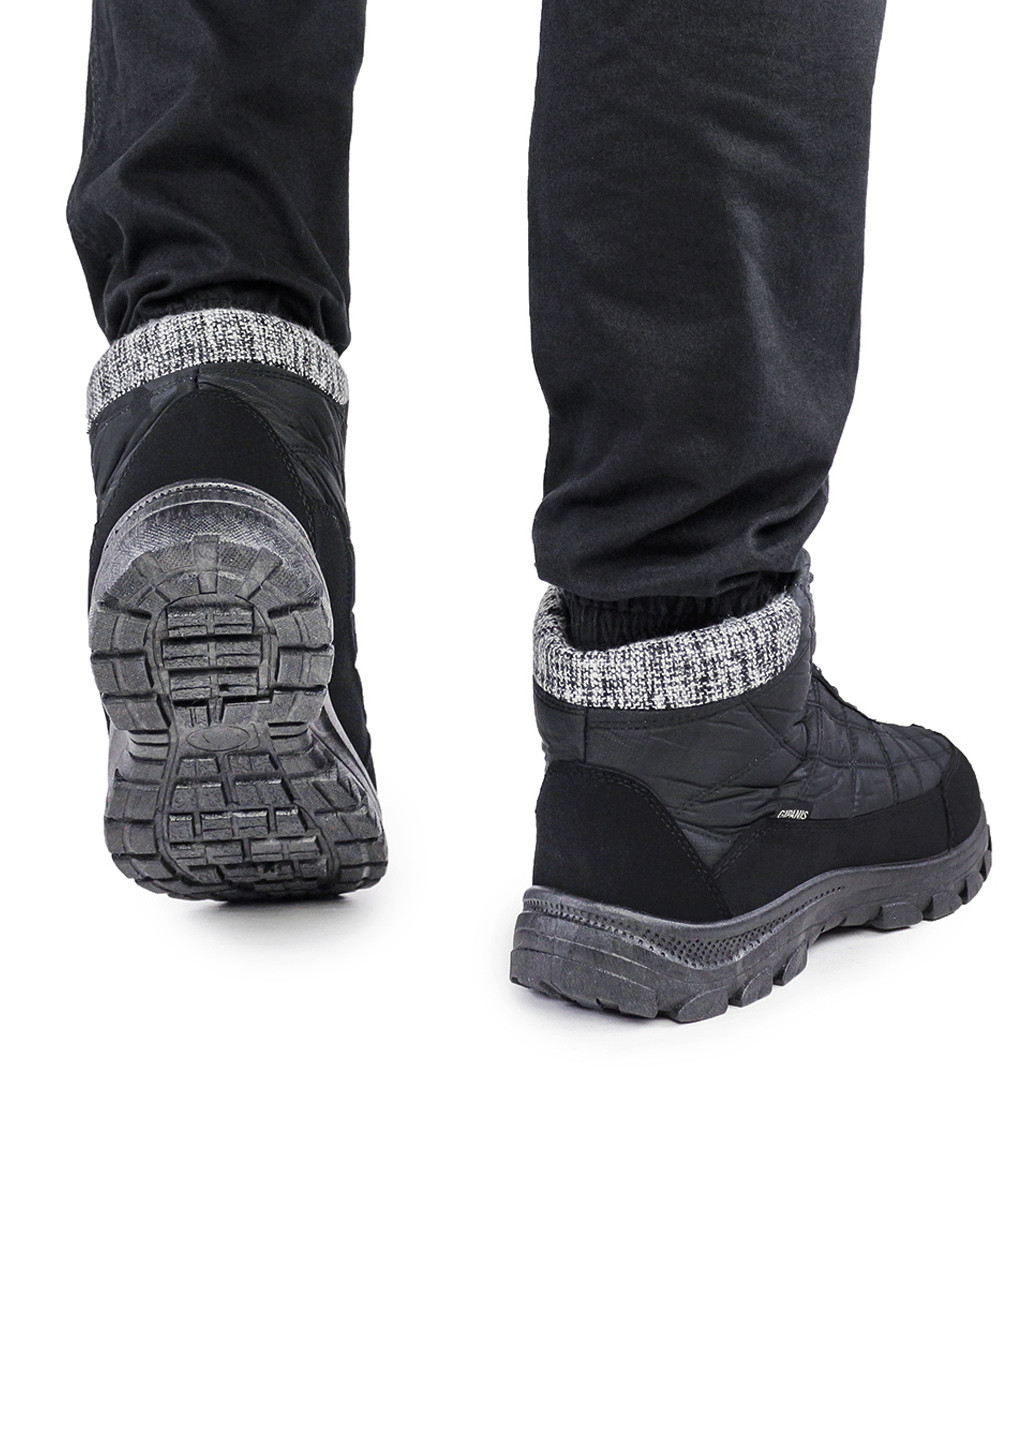 Черные зимние мужские ботинки зимние на меху черные 1493417419 Gipanis